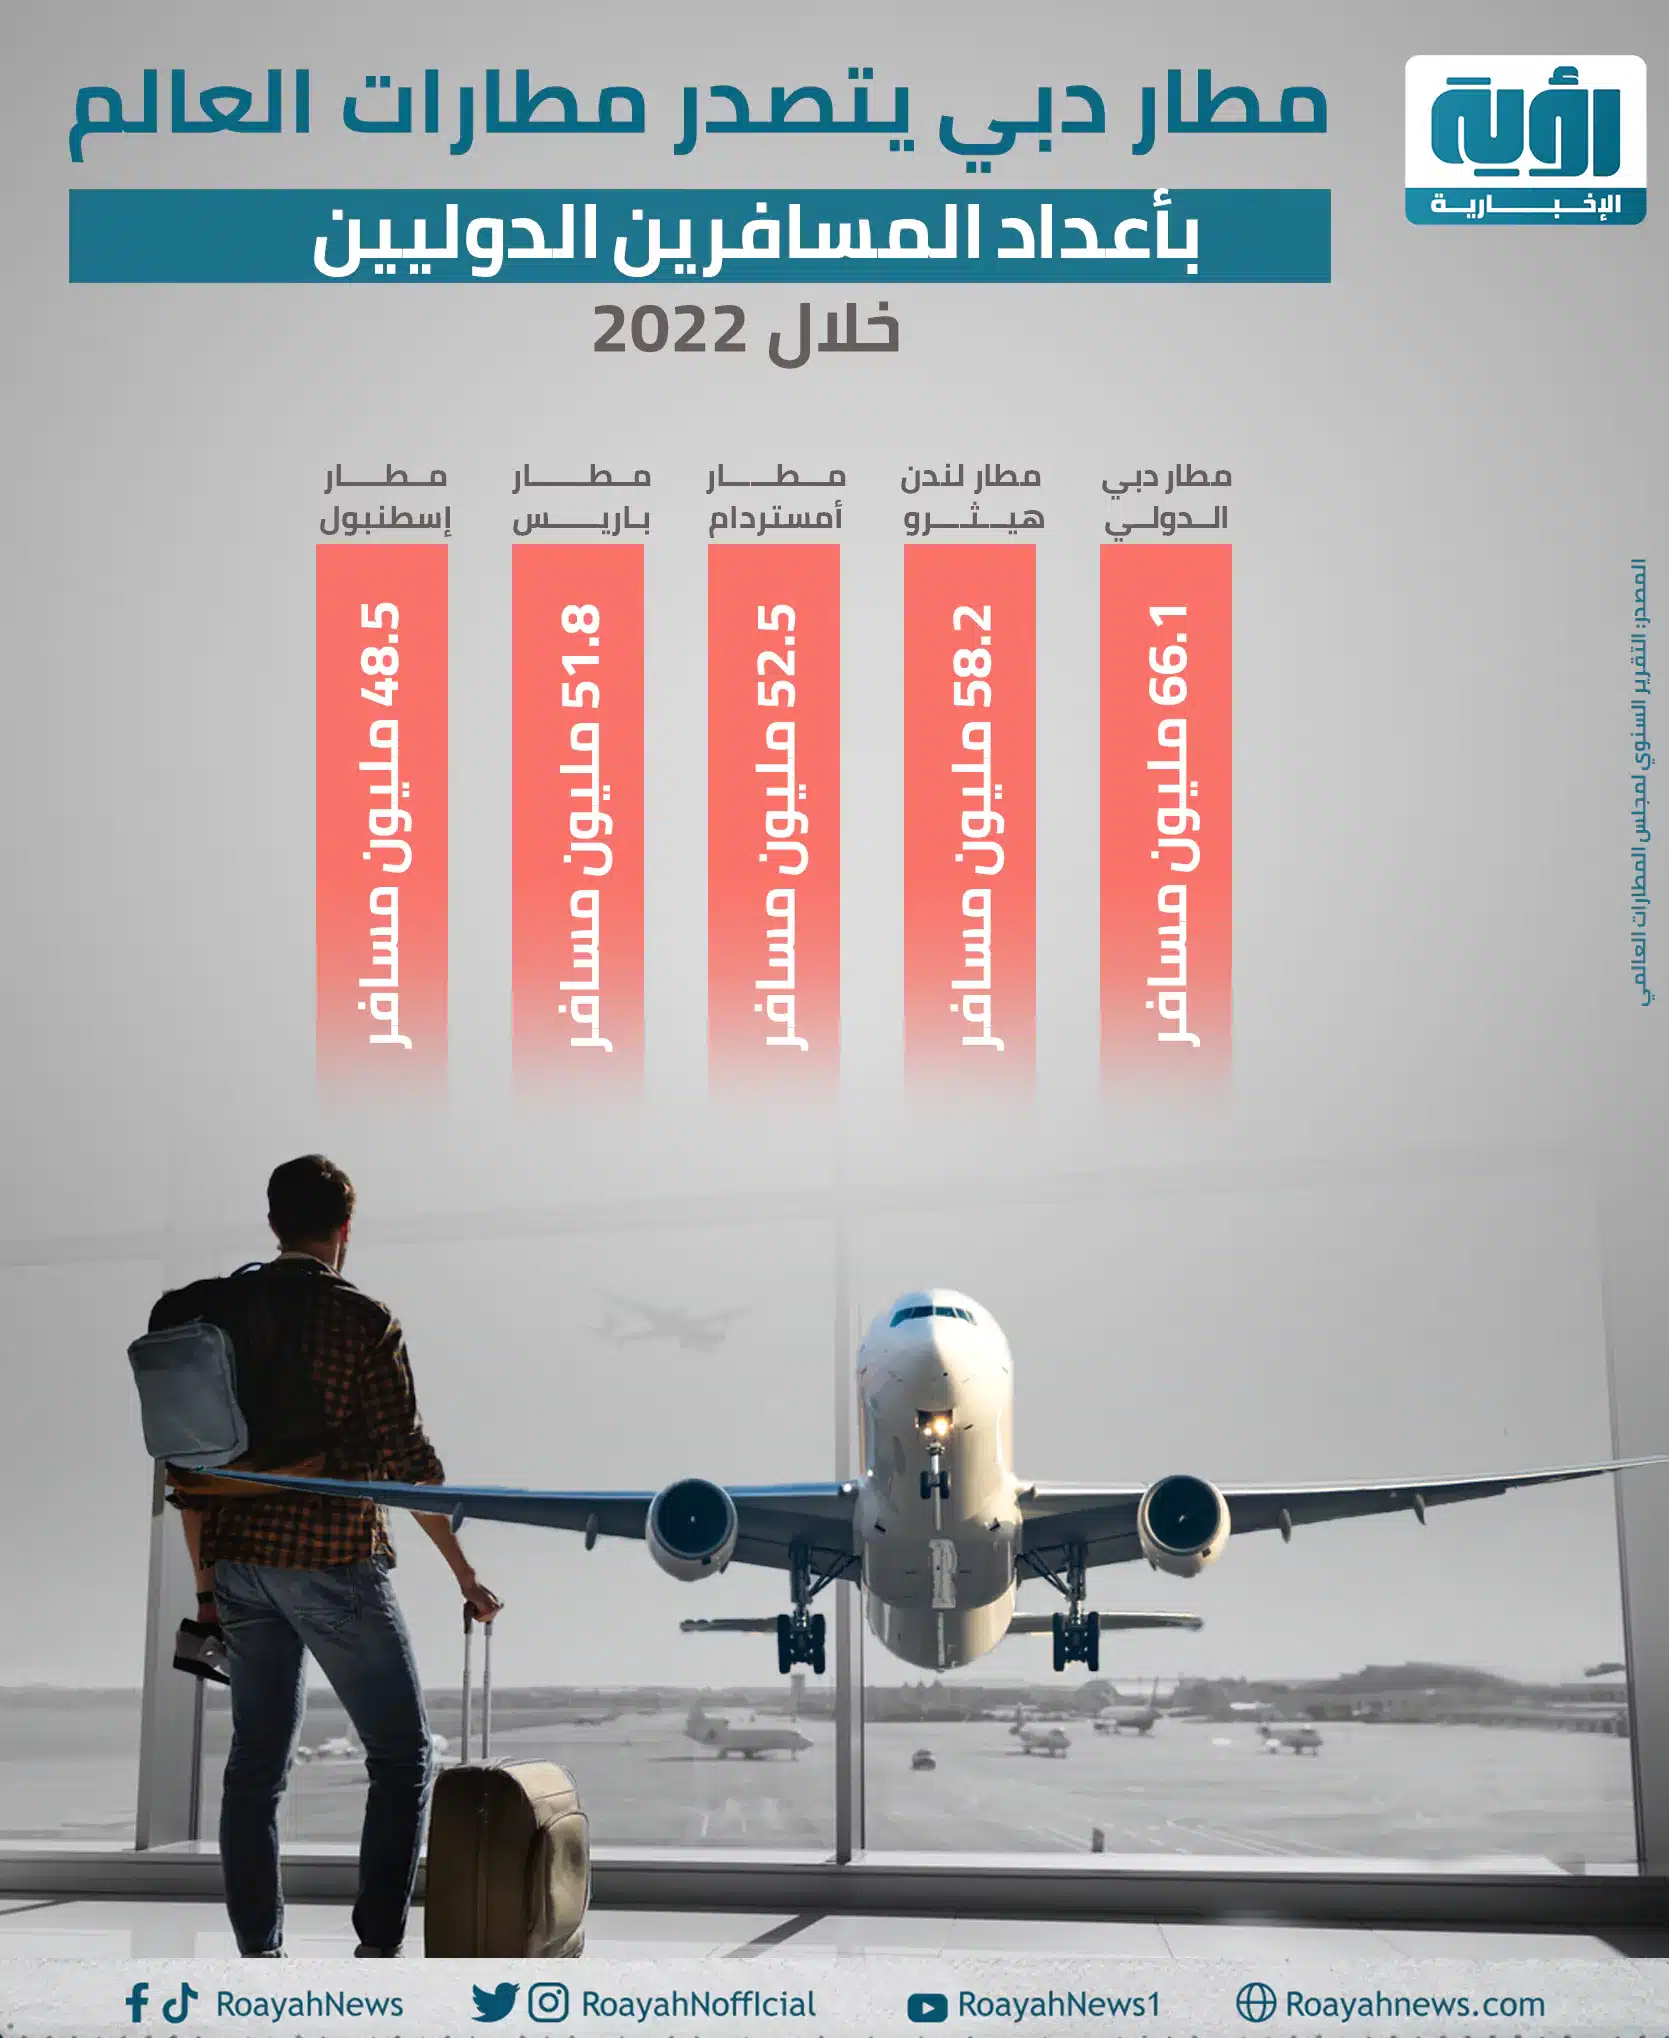 انفوجراف المطارات الأكثر استقبالا للمسافرين خلال 2022